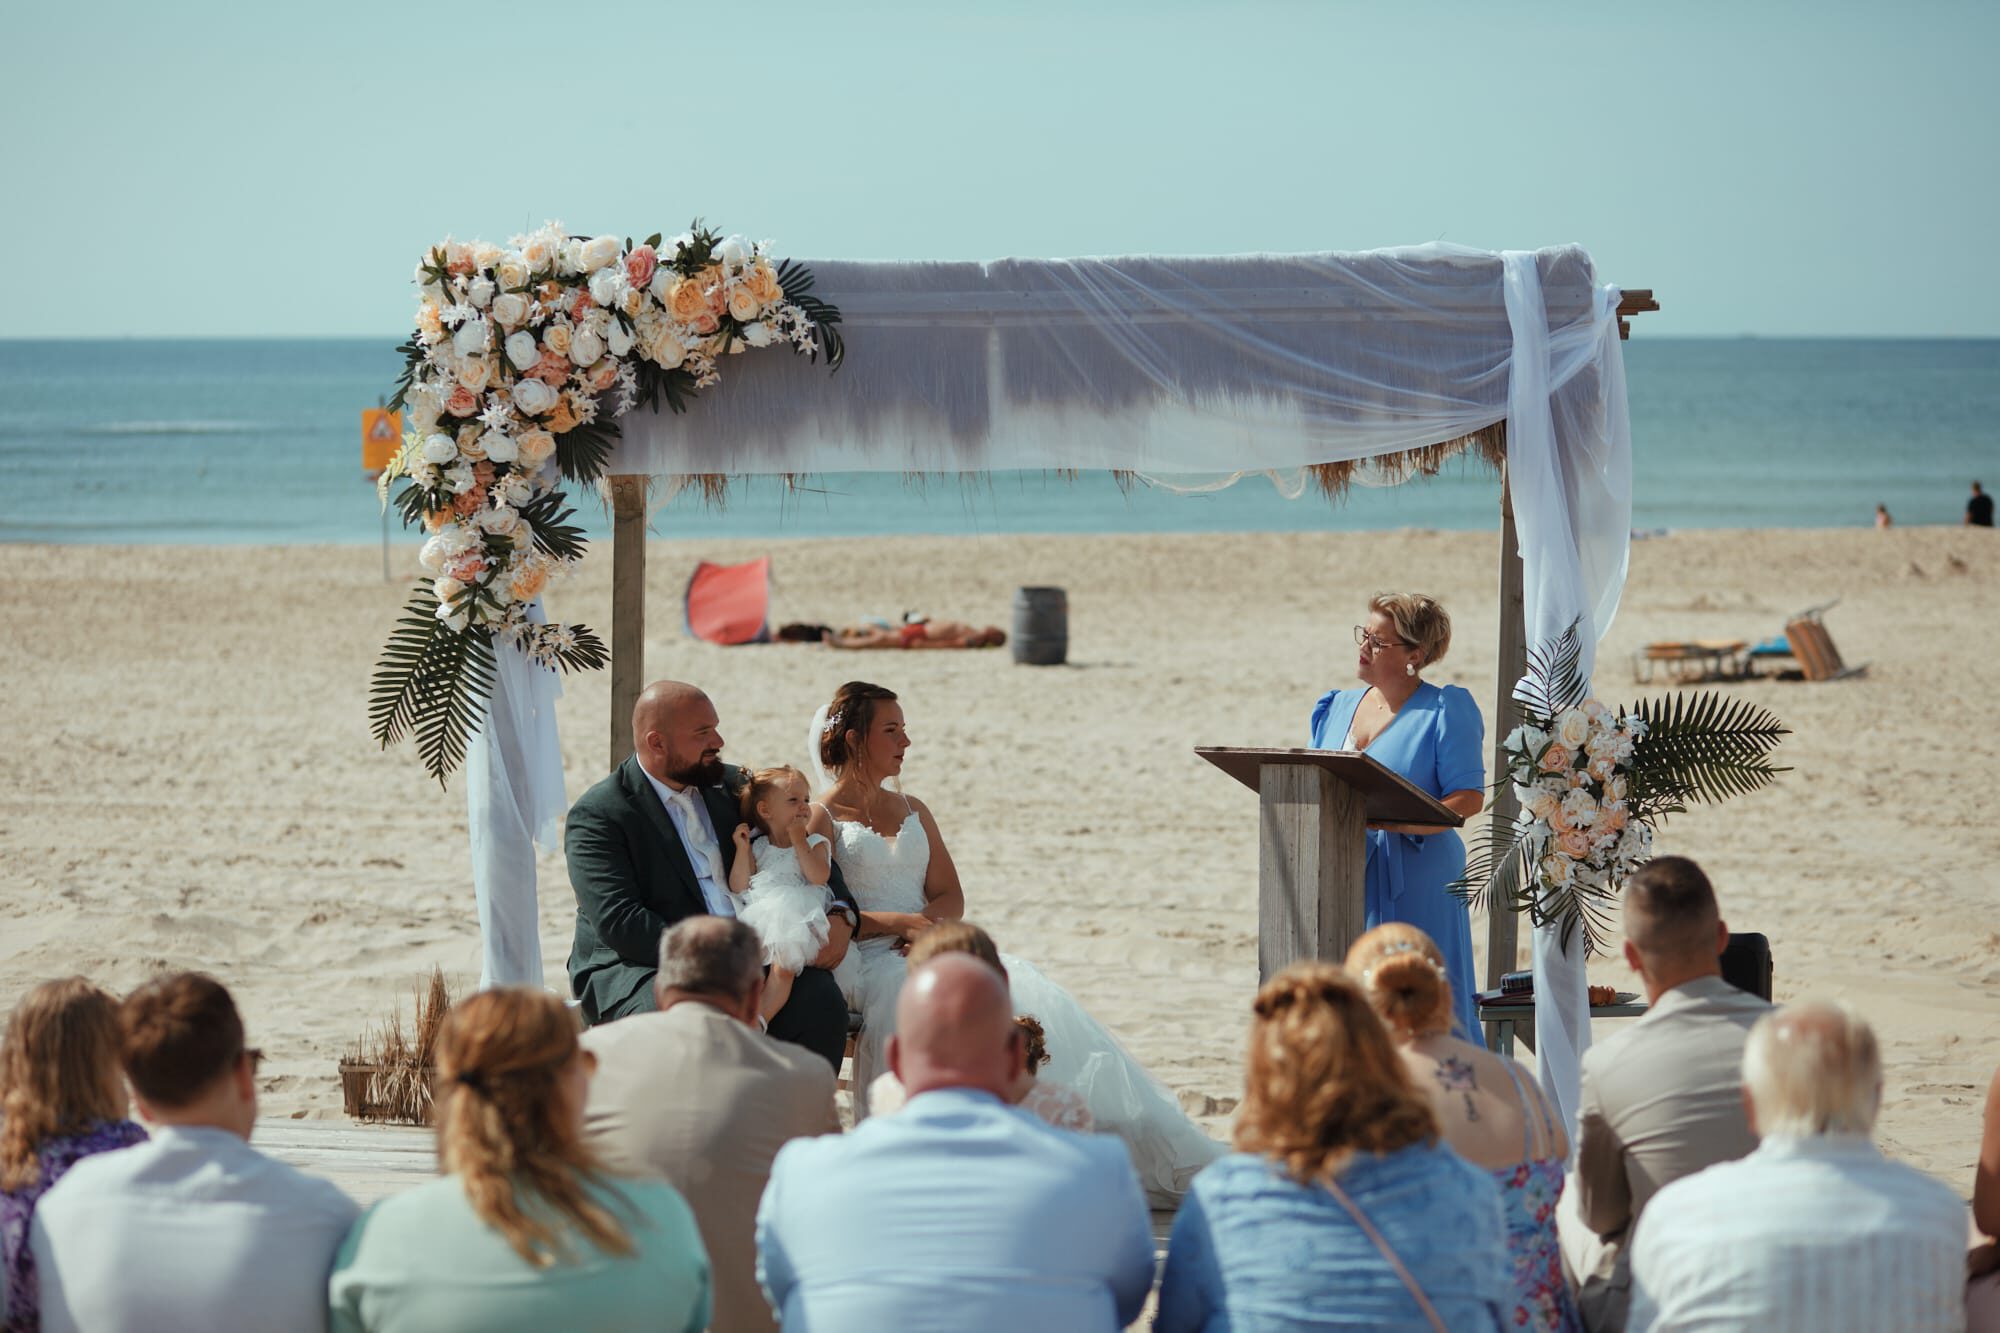 Trouwen in 2023
Trouwambtenaar
Babs
ceremonie
trouwen
huwelijk
trouwen in 2024
Heemskerk
Trouwen in Heemskerk
trouwen in noord-holland
trouwlocatie